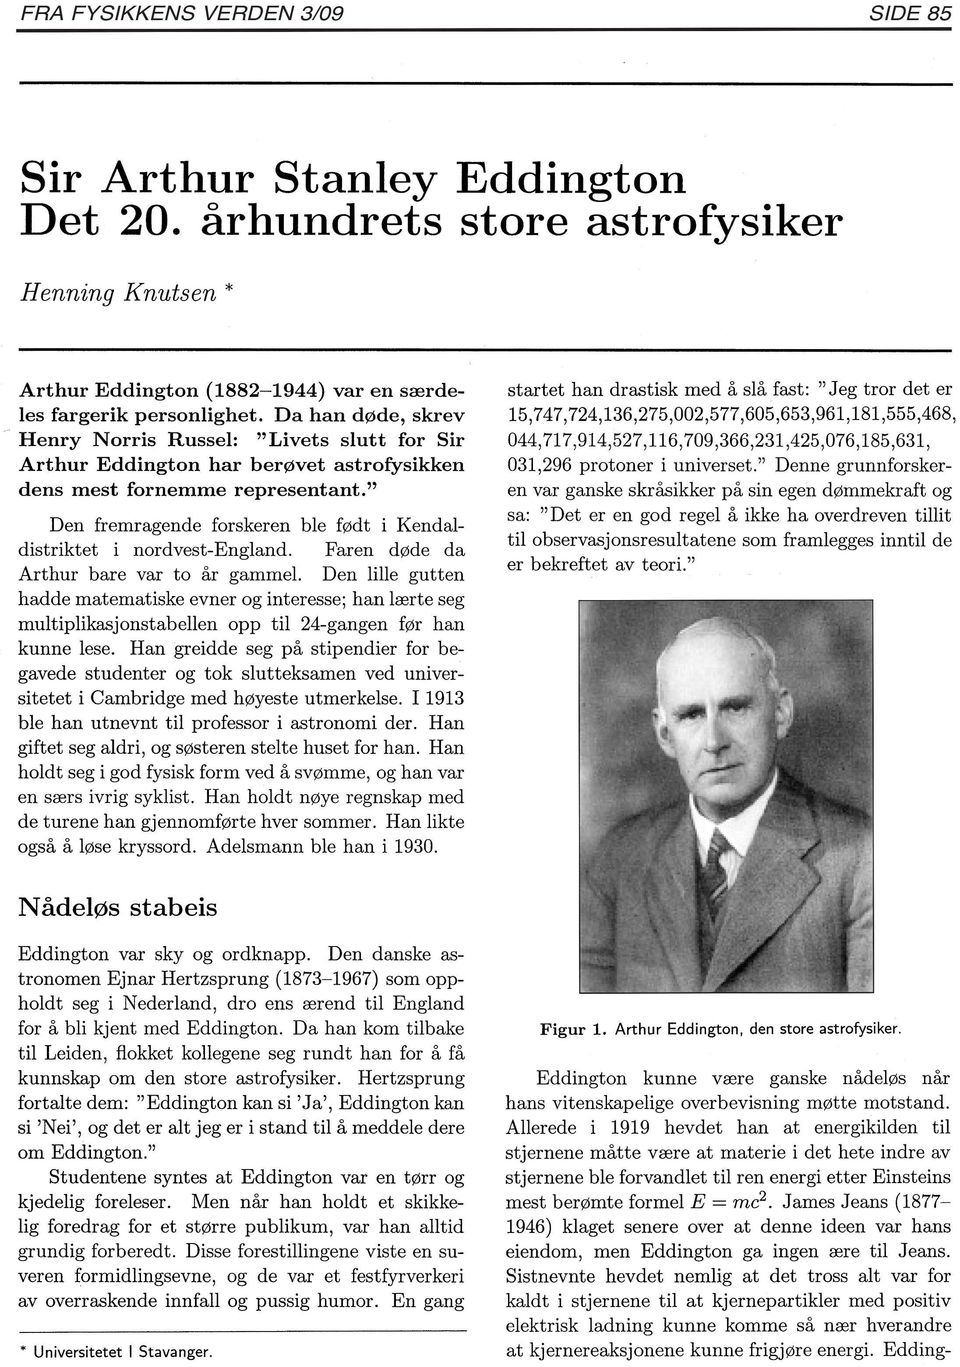 " Den fremragende forskeren ble født i Kendaldistriktet i nordvest-england. Faren døde da Arthur bare var to år gammel.